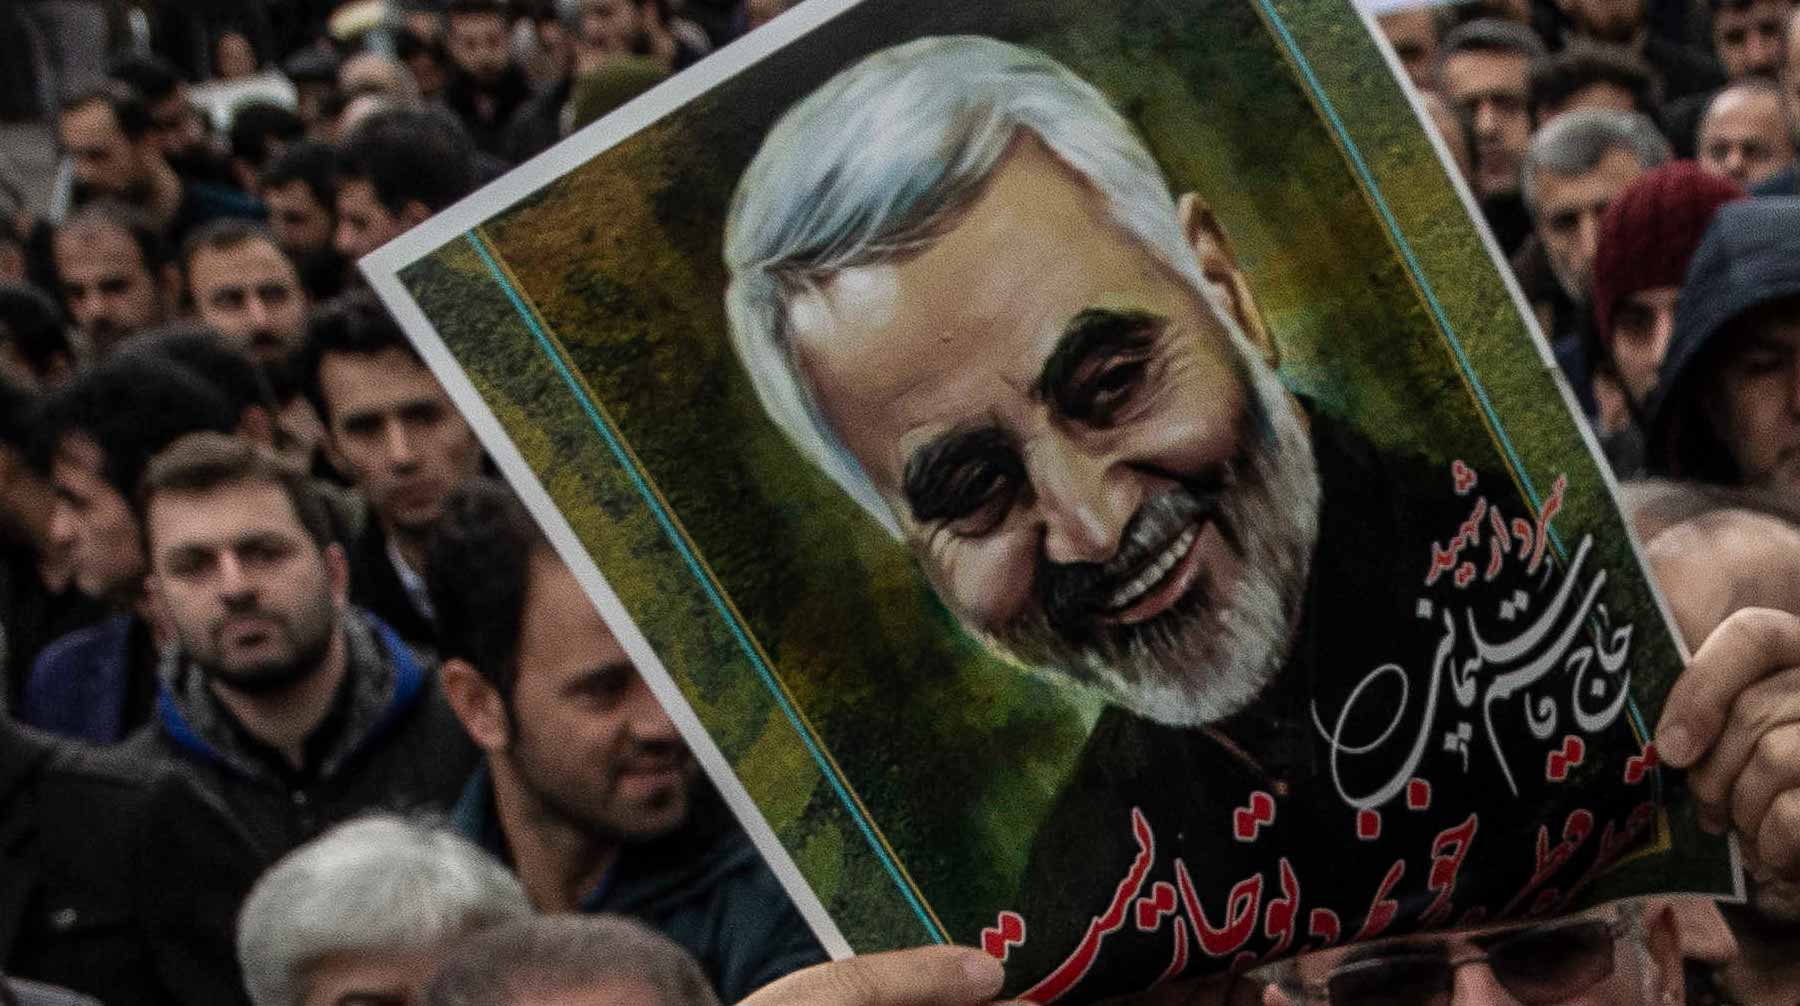 Прокурор Тегерана обвинил в причастности к убийству генерала Касема Сулеймани 36 человек, включая президента США Фото: © Global Look Press /  Babak Jeddi